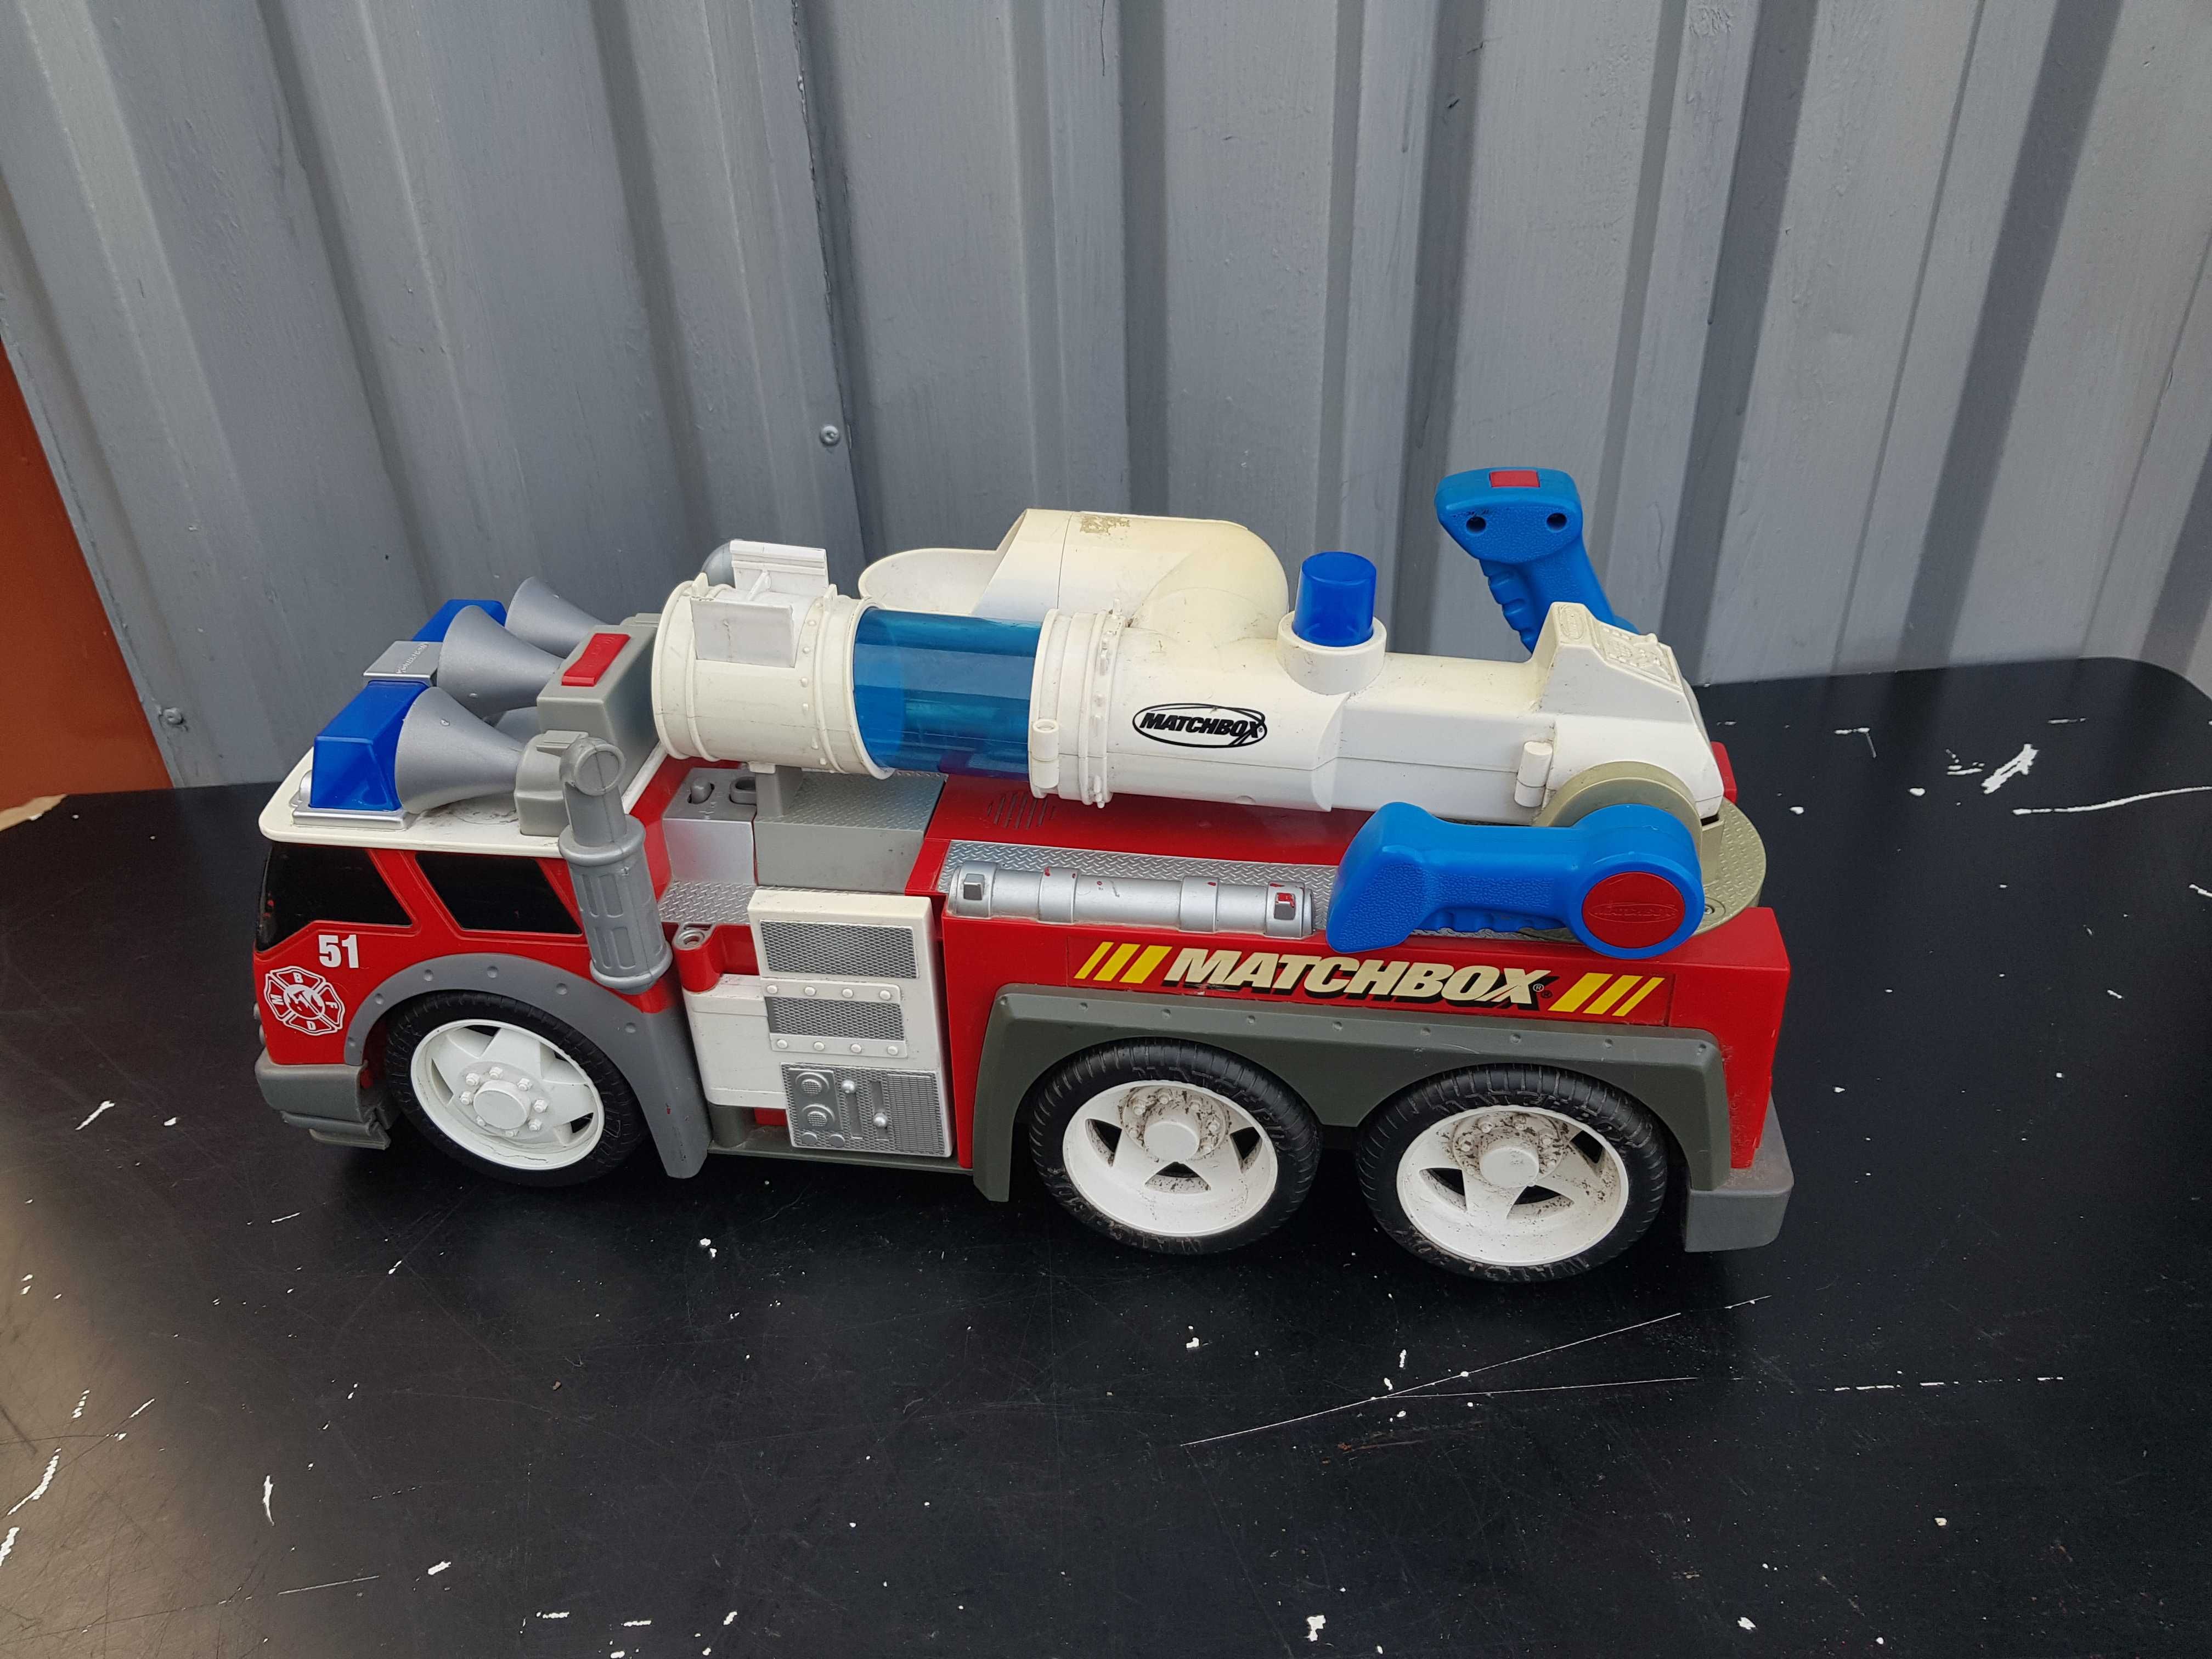 Wóz strażacki Matchbox Mattel duży unikat